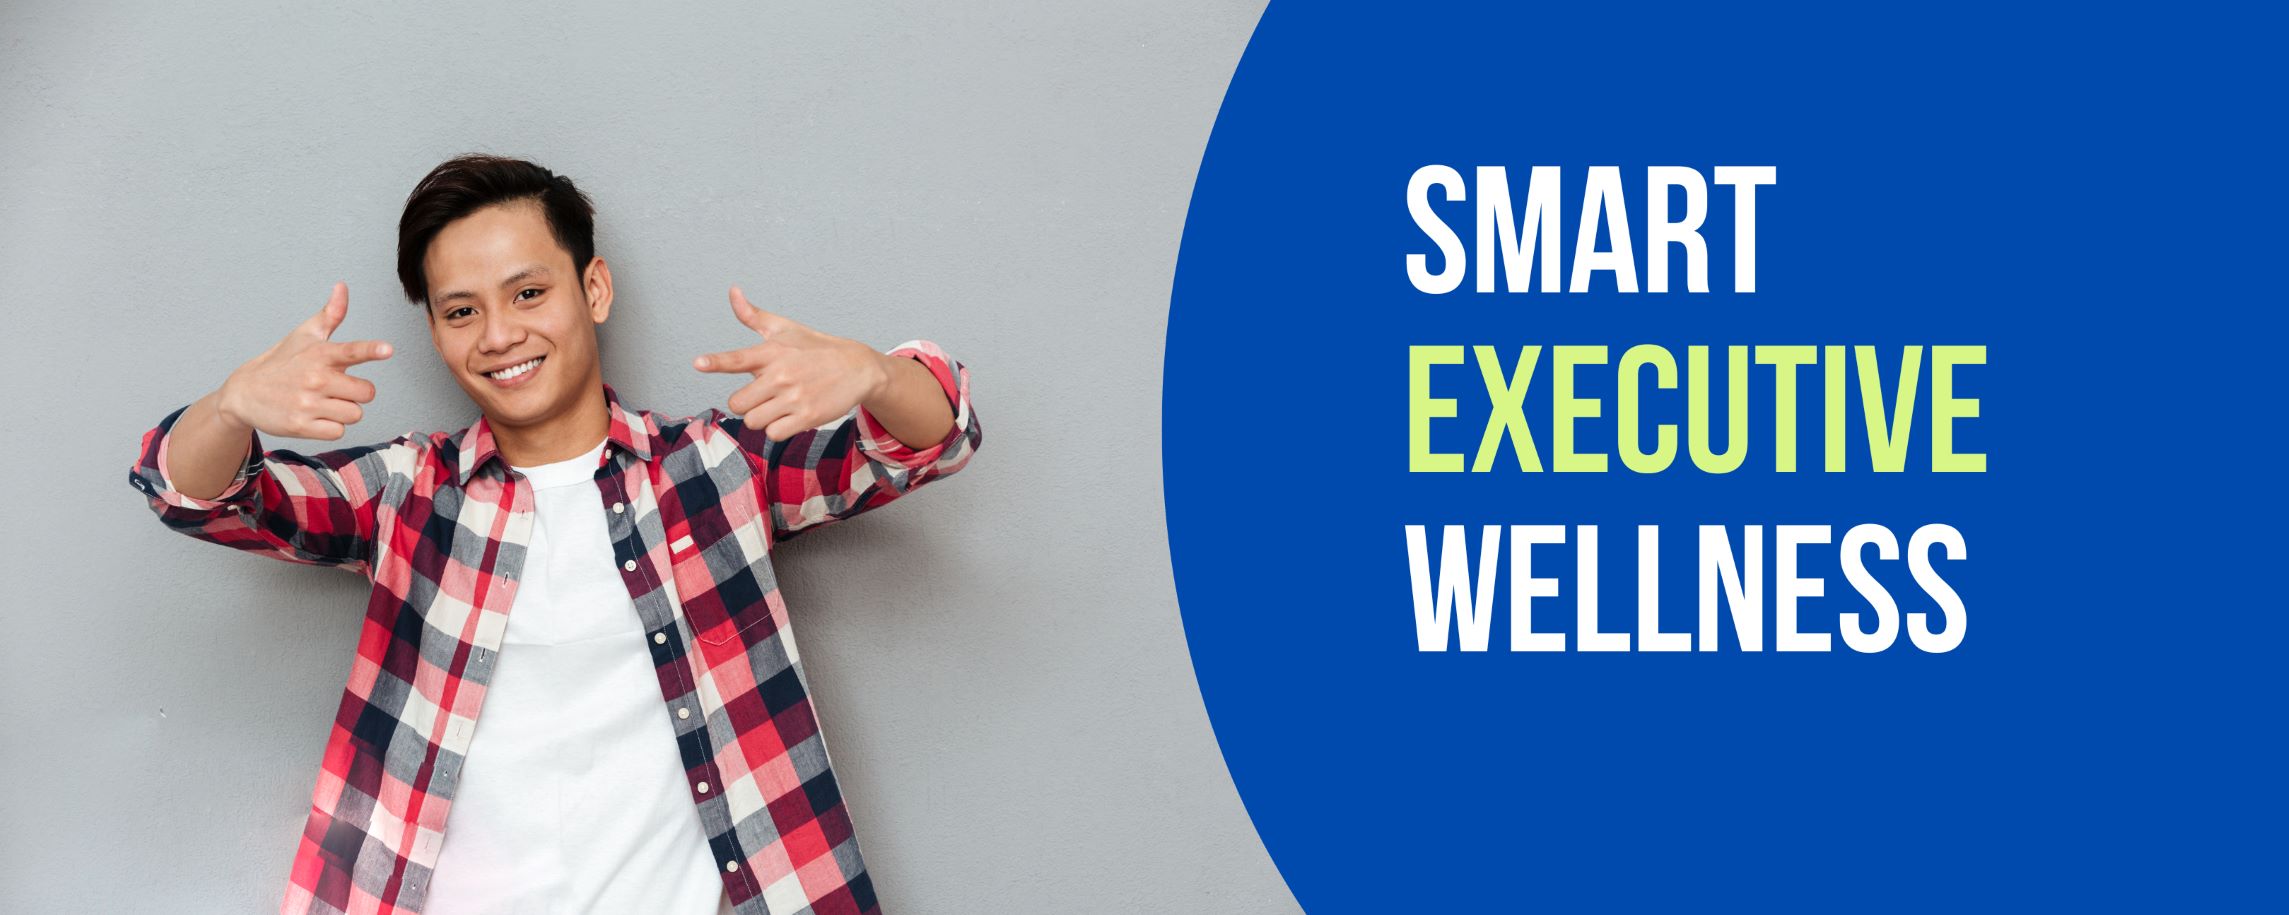 ตรวจสุขภาพสำหรับสุภาพบุรุษอายุ 40 ปีขึ้นไป Smart Executive Wellness Male